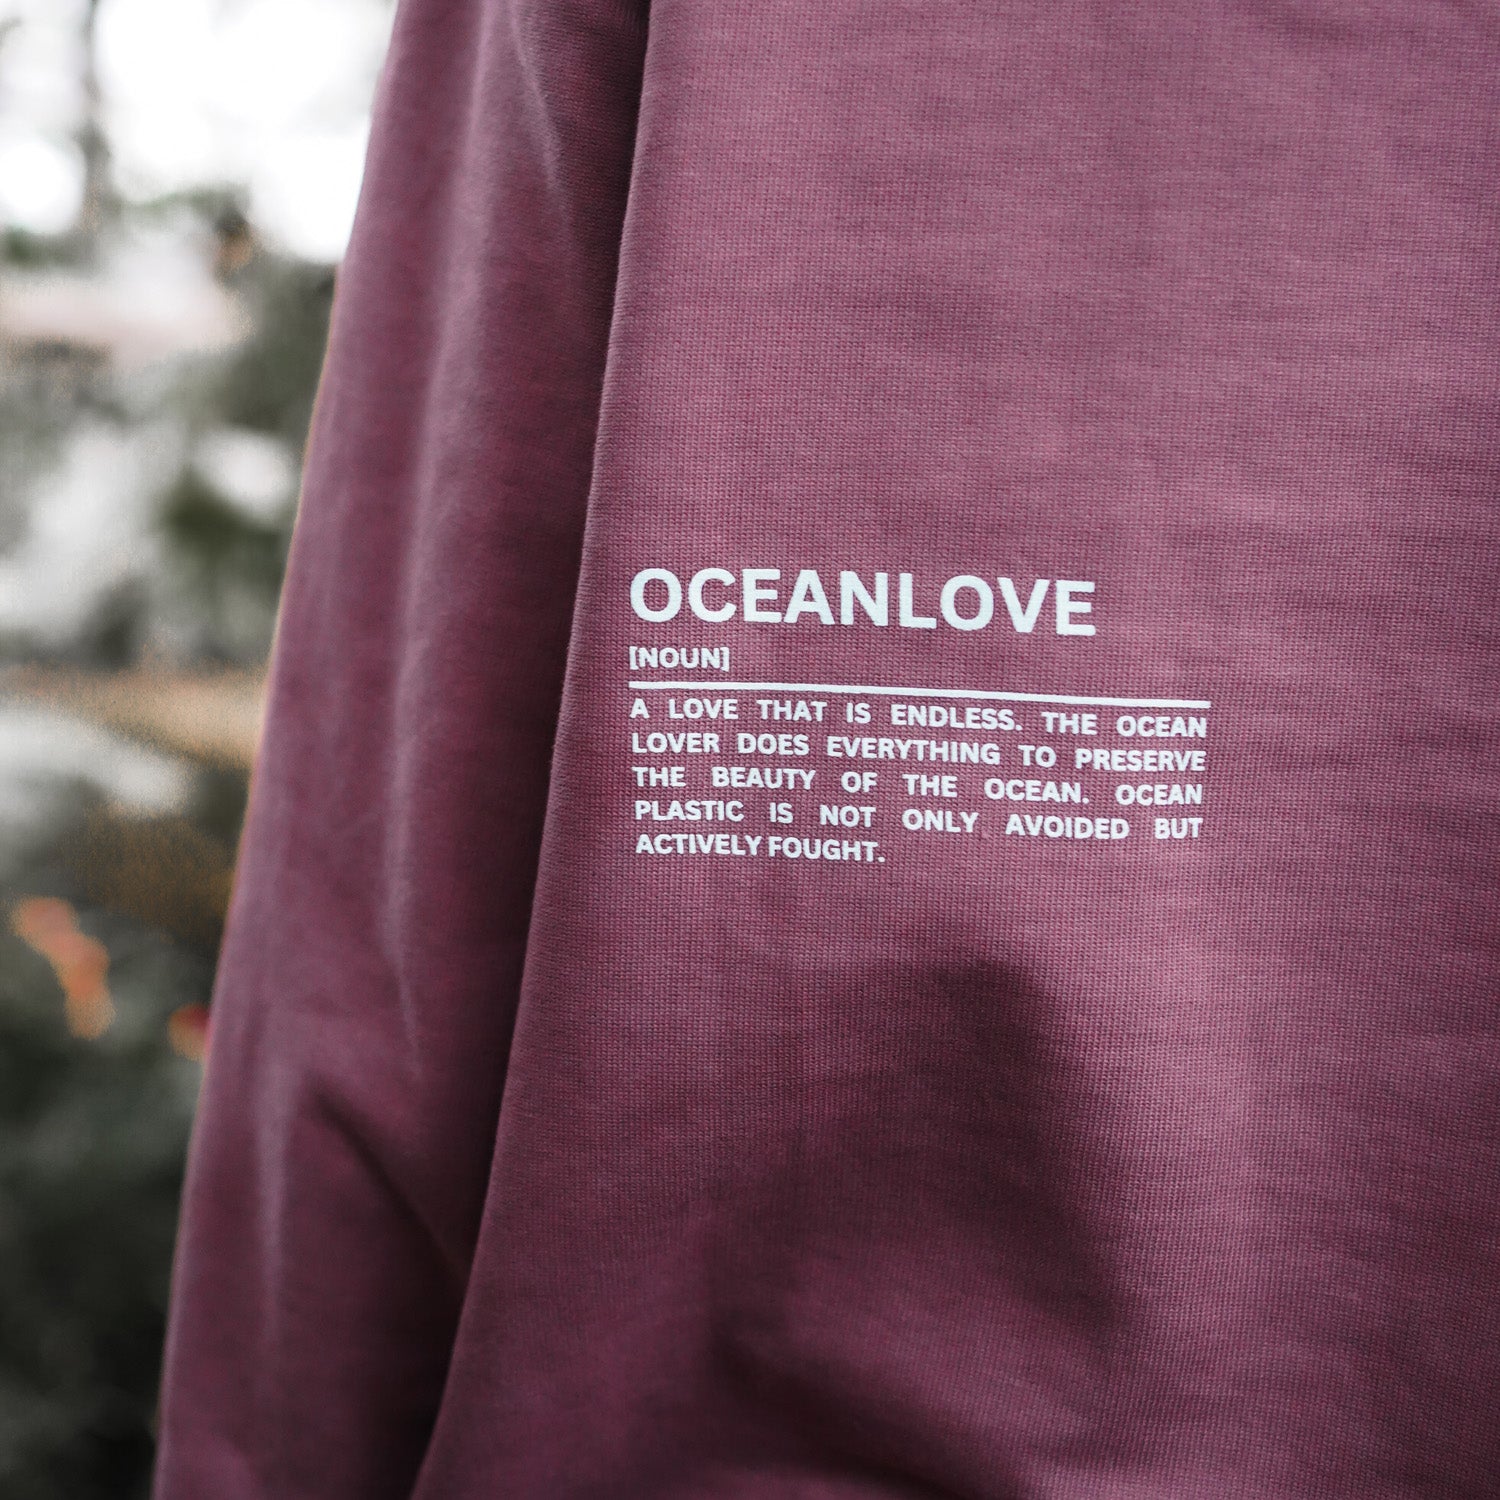 "Limited Oceanlove Edition" Hoodie von Oceanmata®